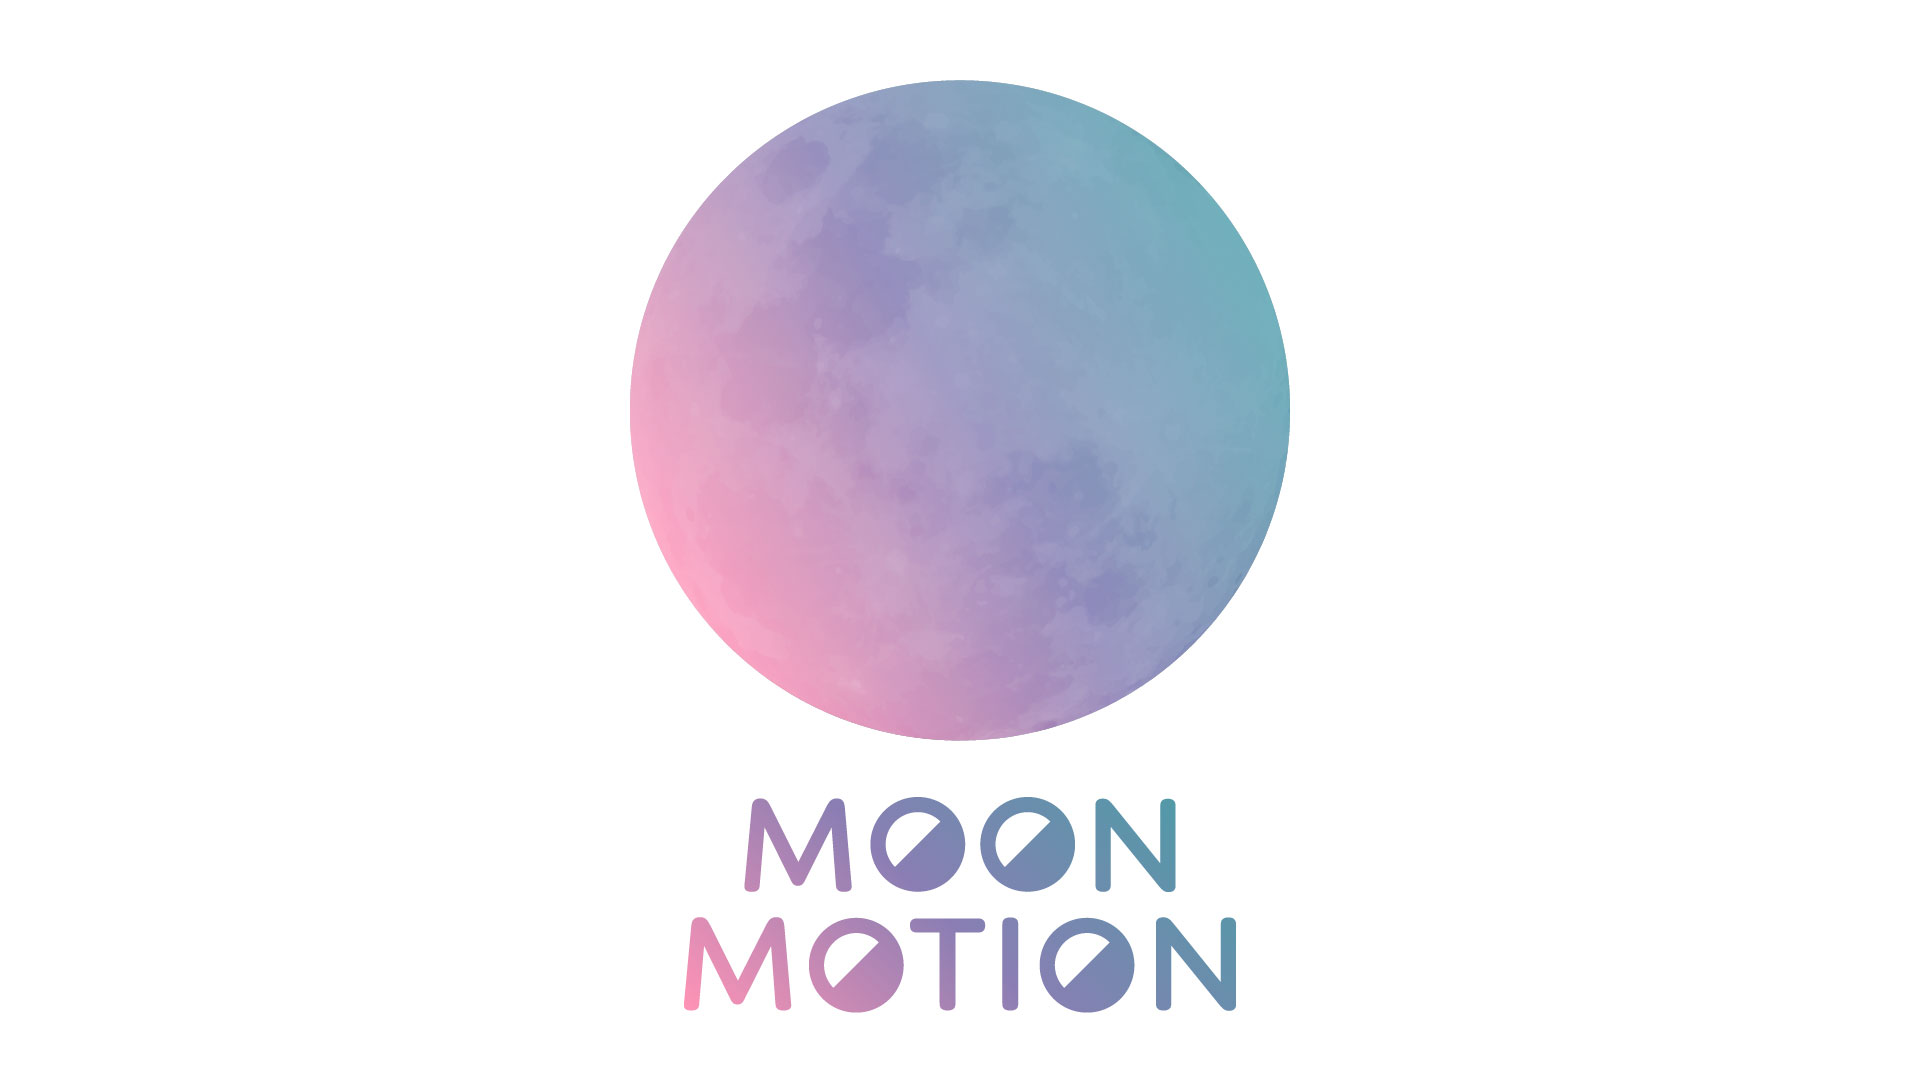 Moon Motion